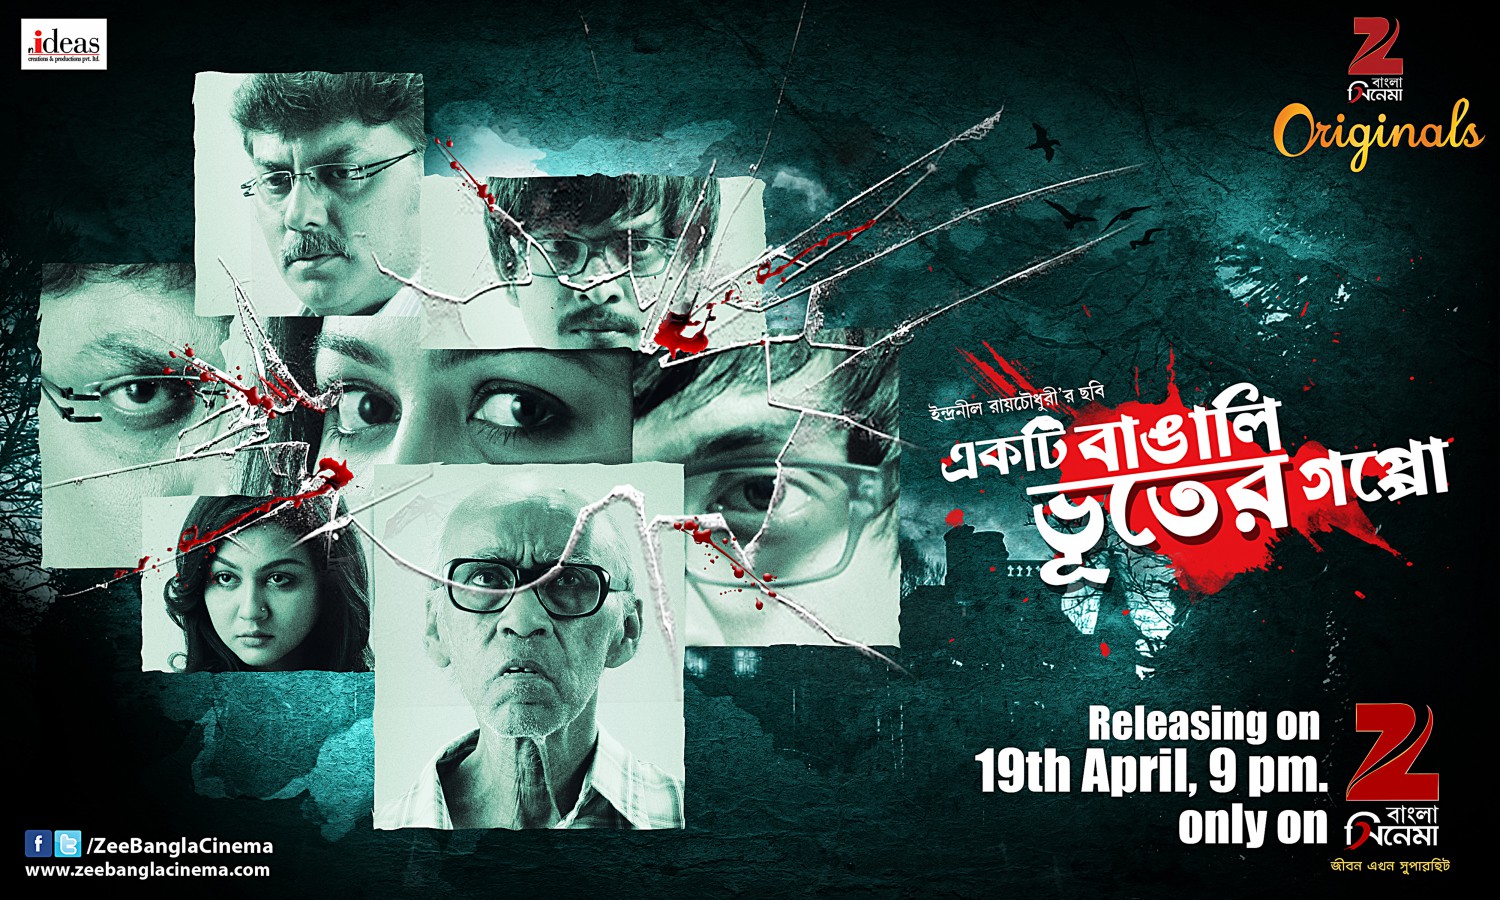 Extra Large TV Poster Image for Ekti Bangali Bhooter Golpo 